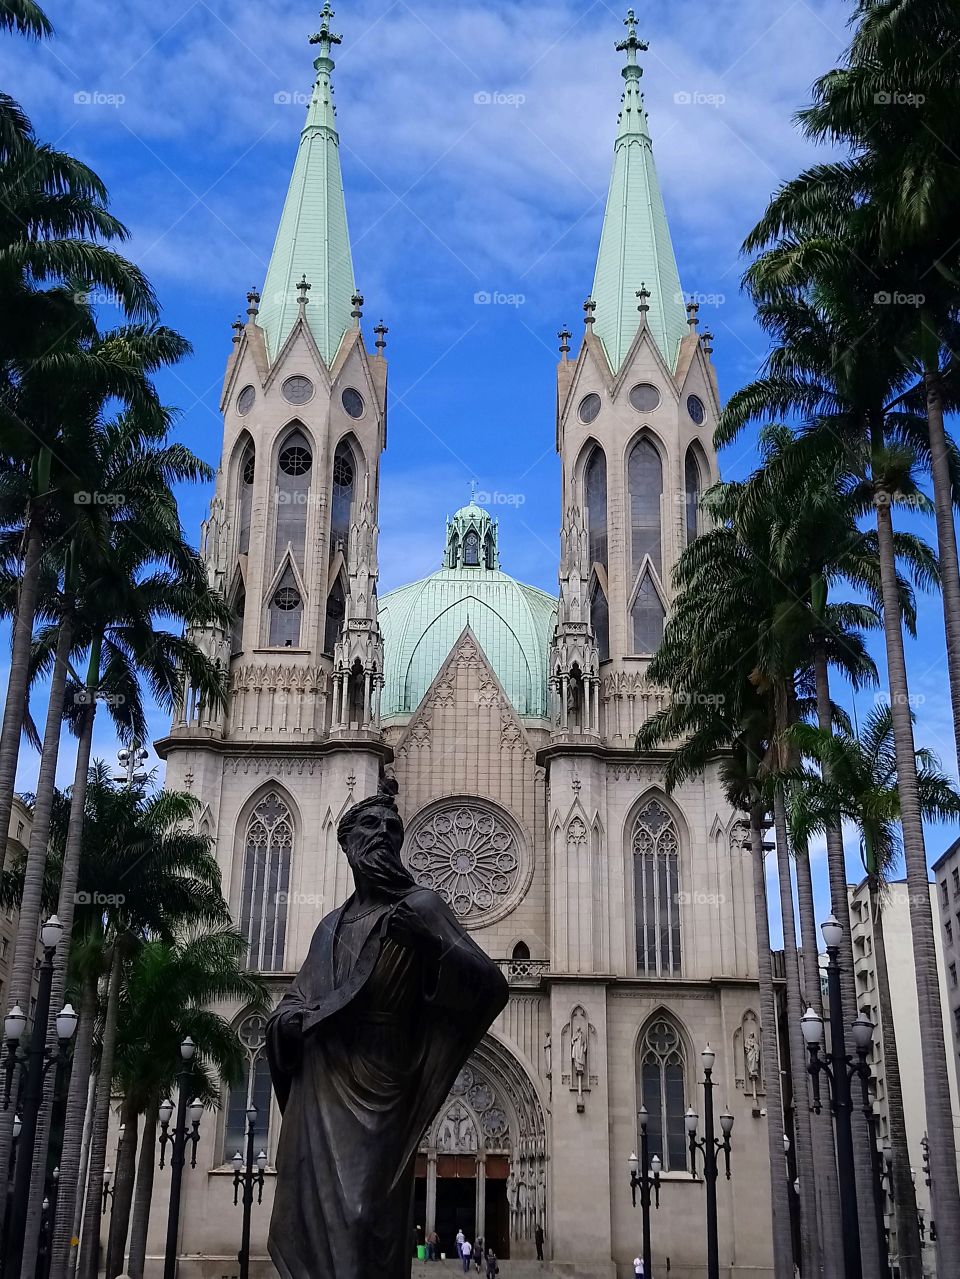 Catedral da Se - Centro de São Paulo - Praça da Sé